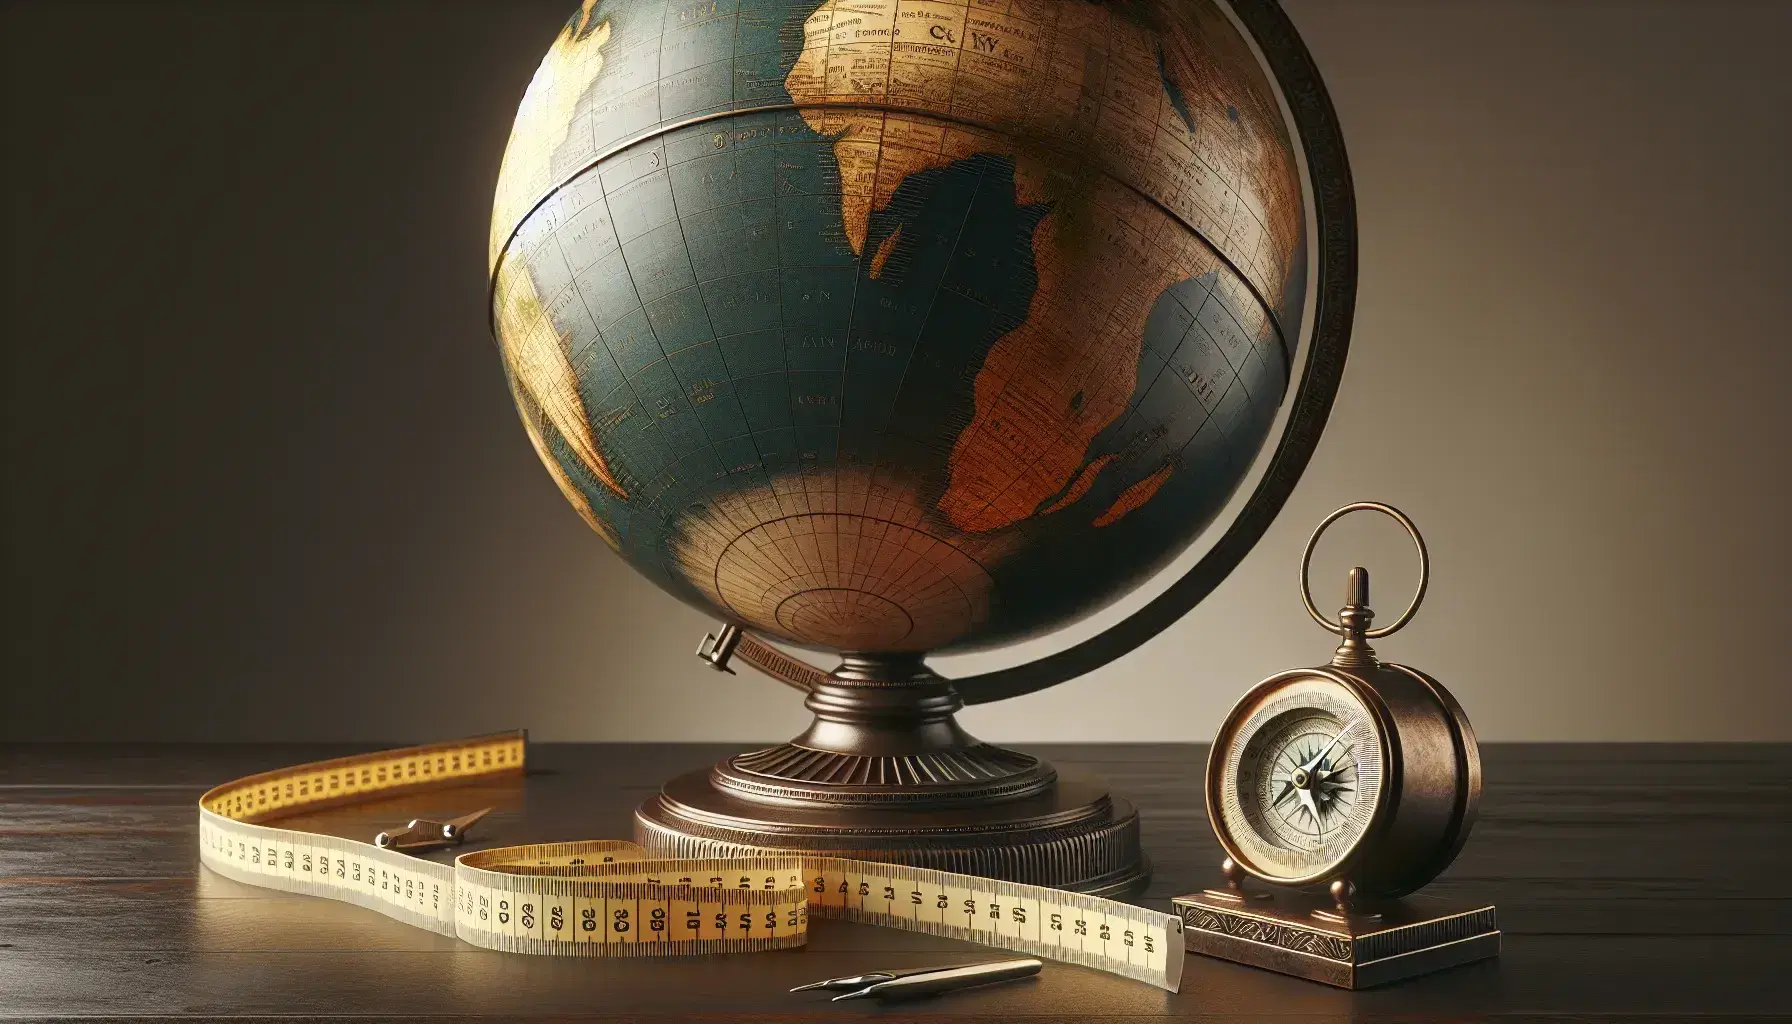 Globo terráqueo tridimensional con continentes en verde y marrón, océanos en azul, brújula antigua y cinta métrica sobre mesa de madera oscura.